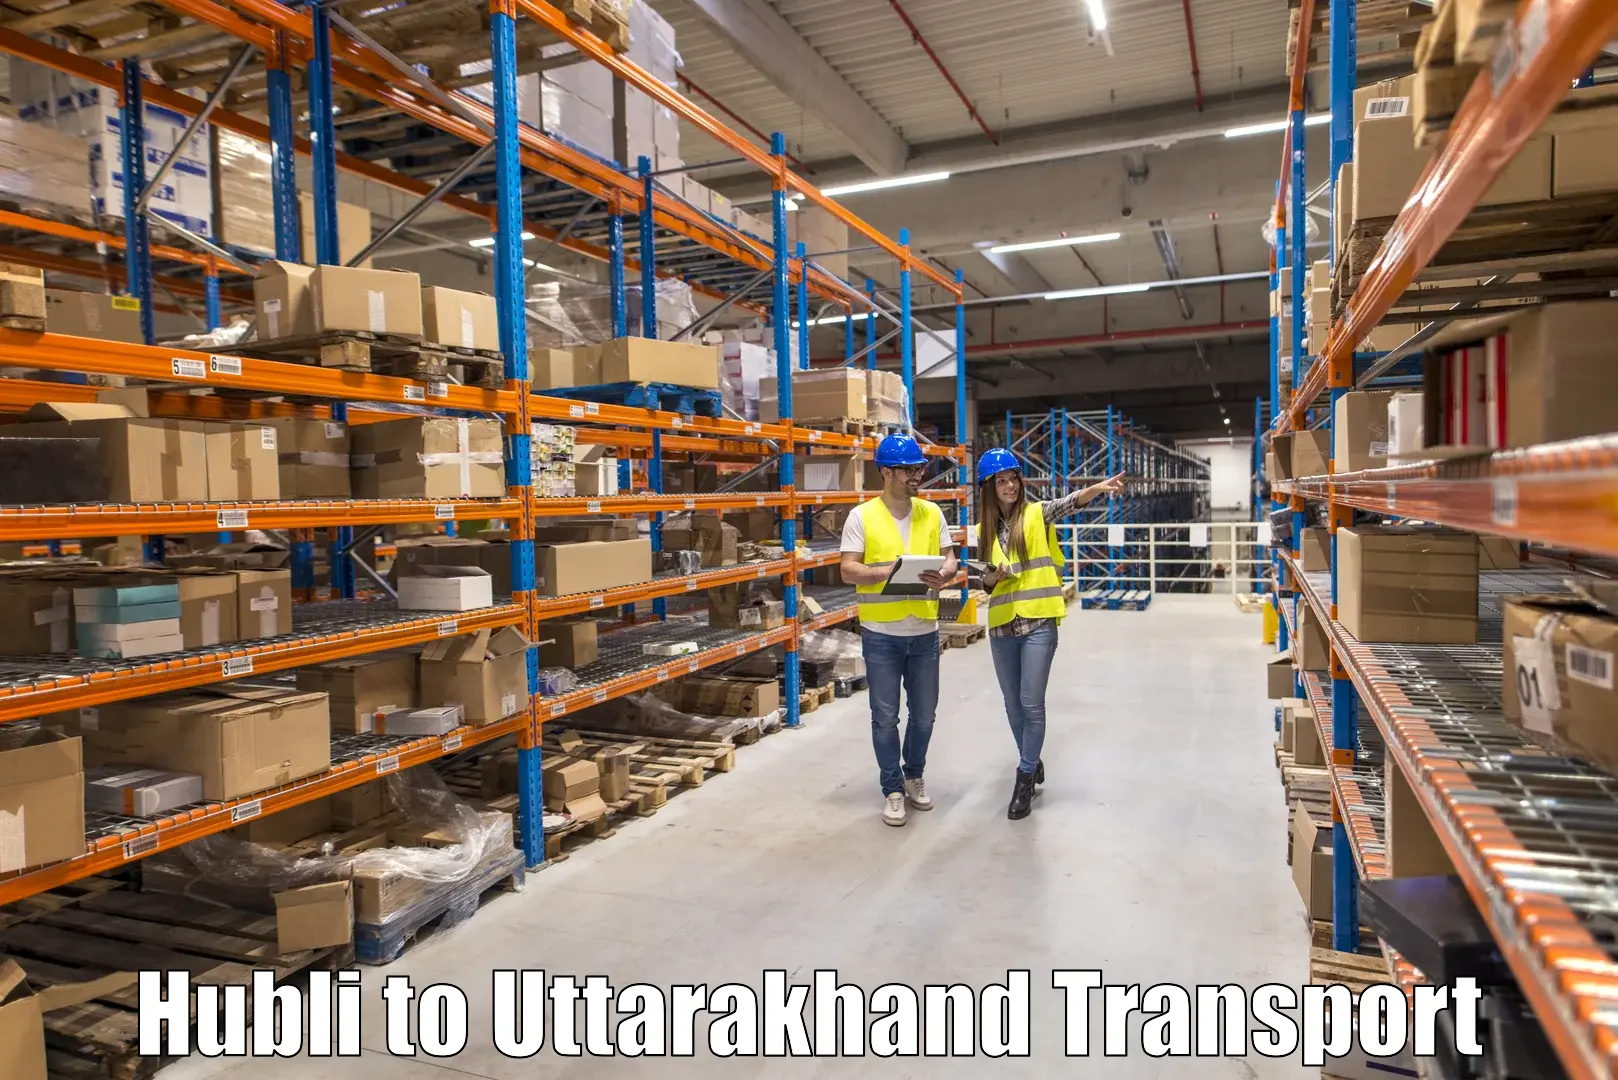 Truck transport companies in India Hubli to IIT Roorkee